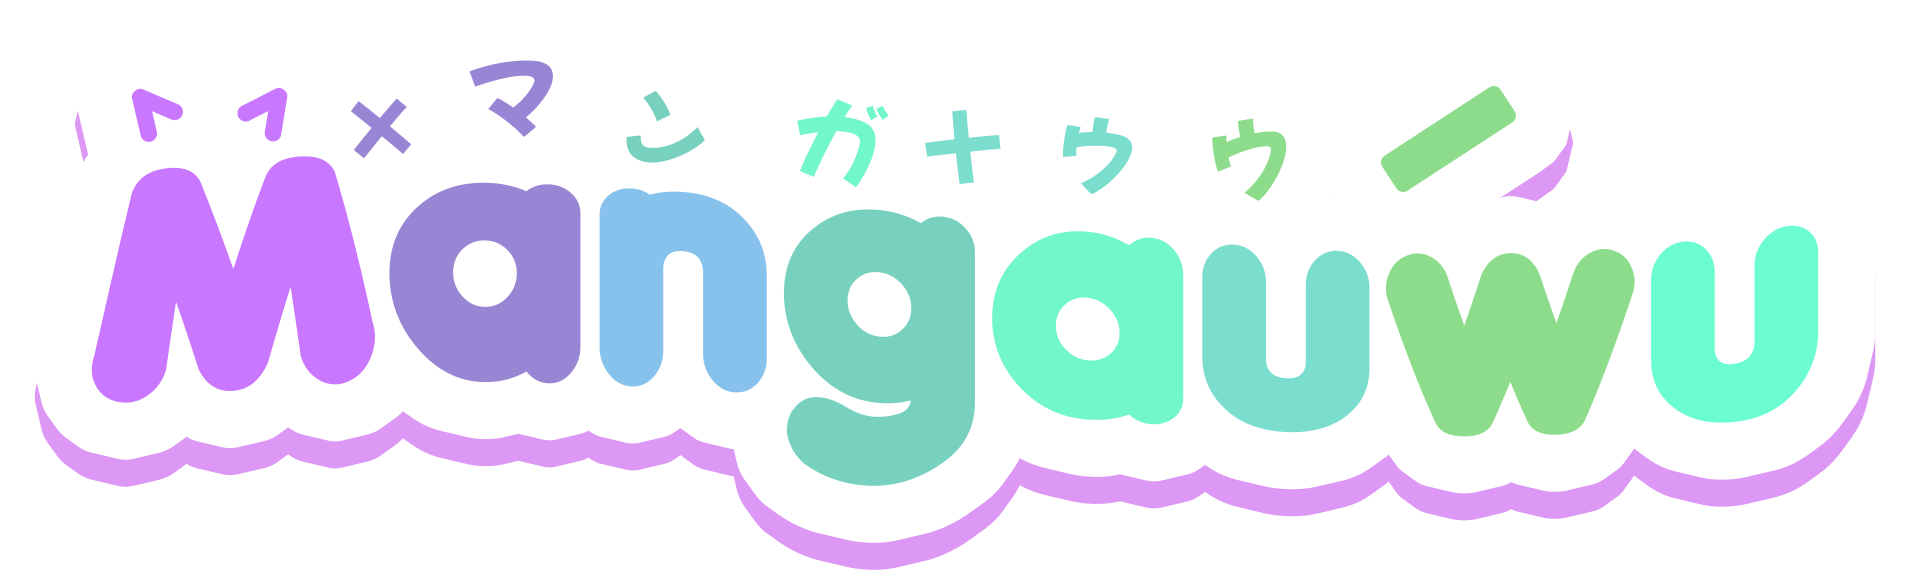 mangauwu's logo